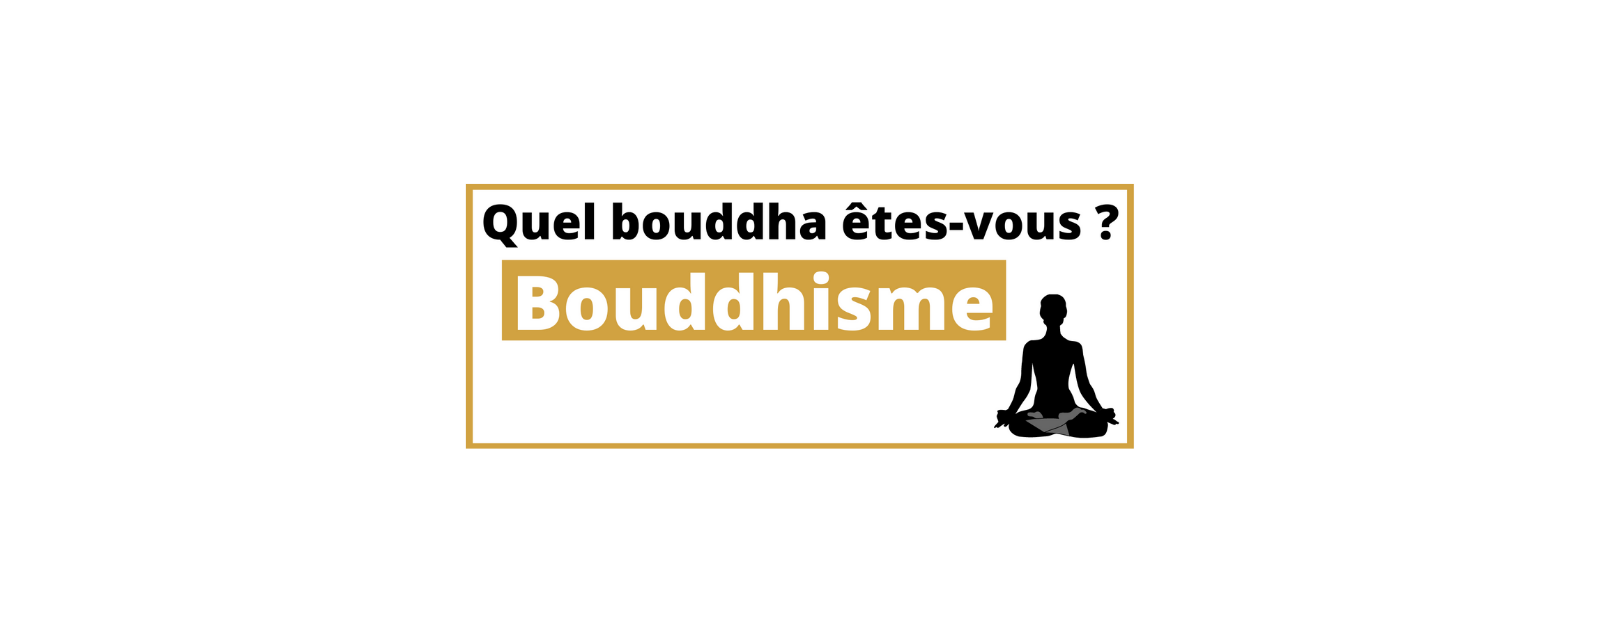 Bouddhisme : quel bouddha êtes-vous ?